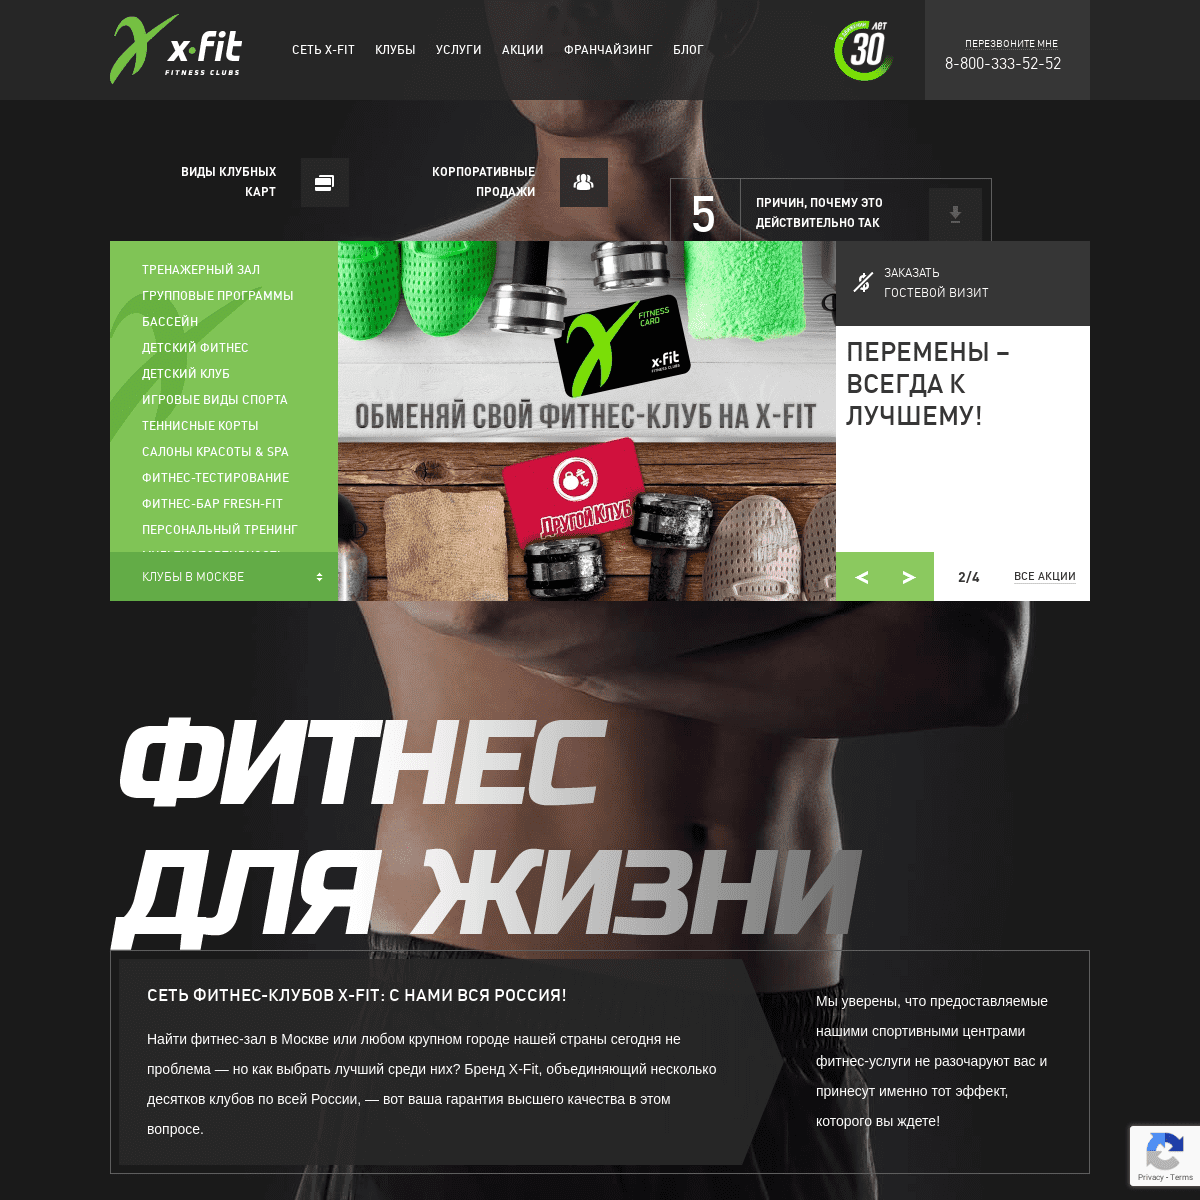 X-FIT - фитнес-клубы бизнес и премиум-класса в Москве и других городах России. 